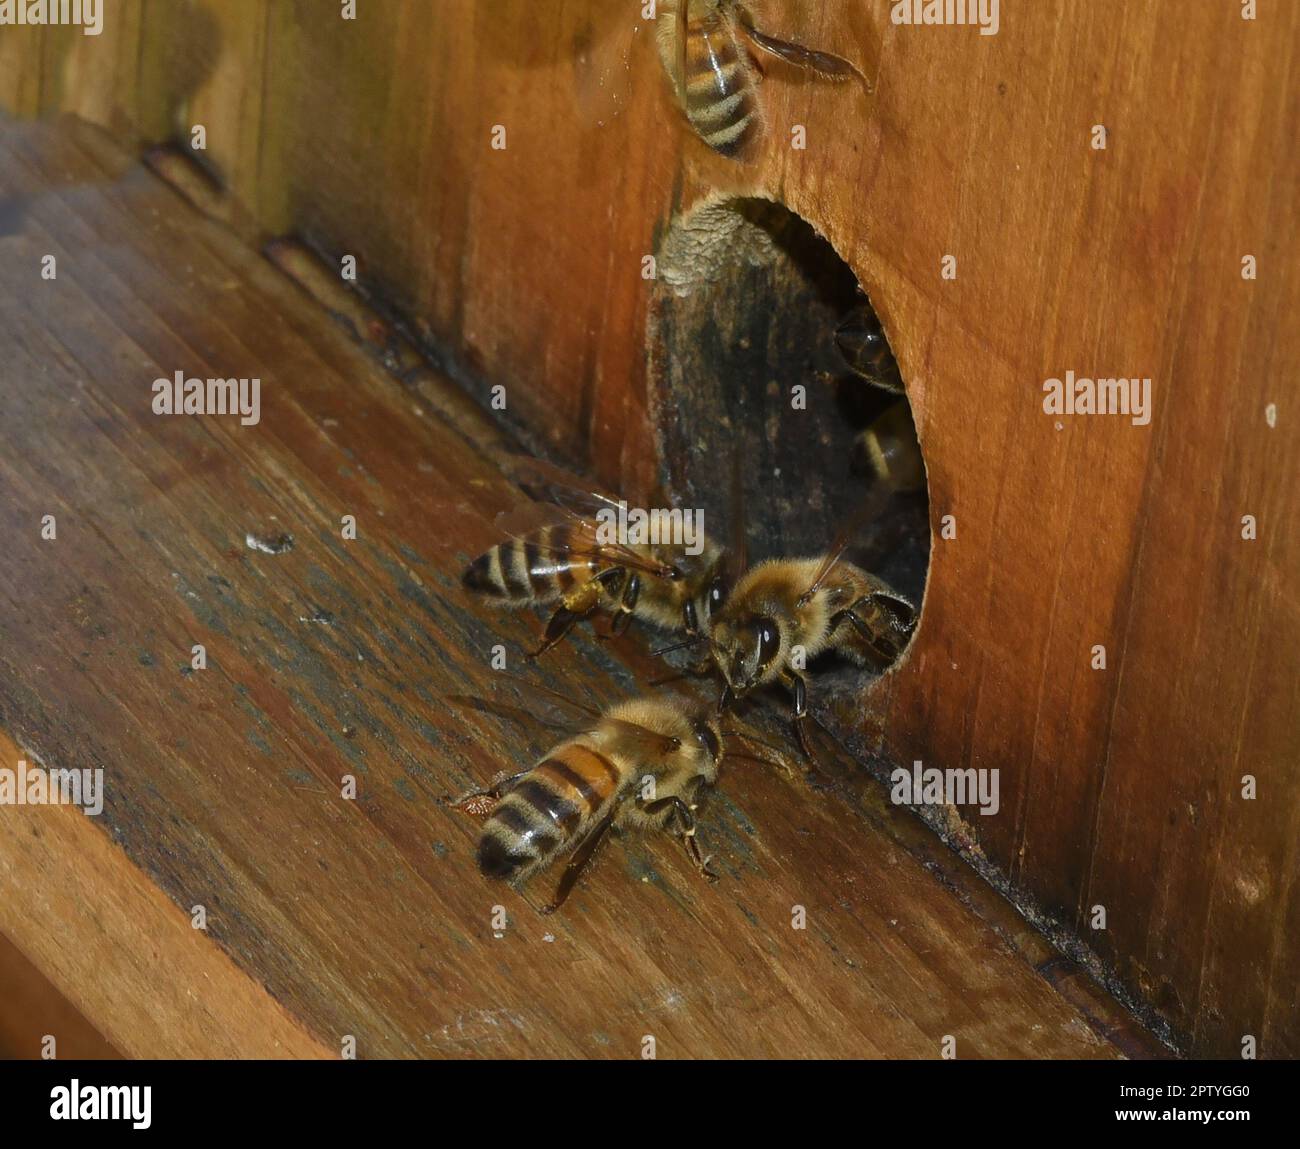 Biene, APIs mellifera, ist ein wichtiges Insekt zur Bekräftung von Pflanzen und zum Vernehmen von Honig. Honigbiene, APIs mellifera, ist eine wichtige in Stockfoto